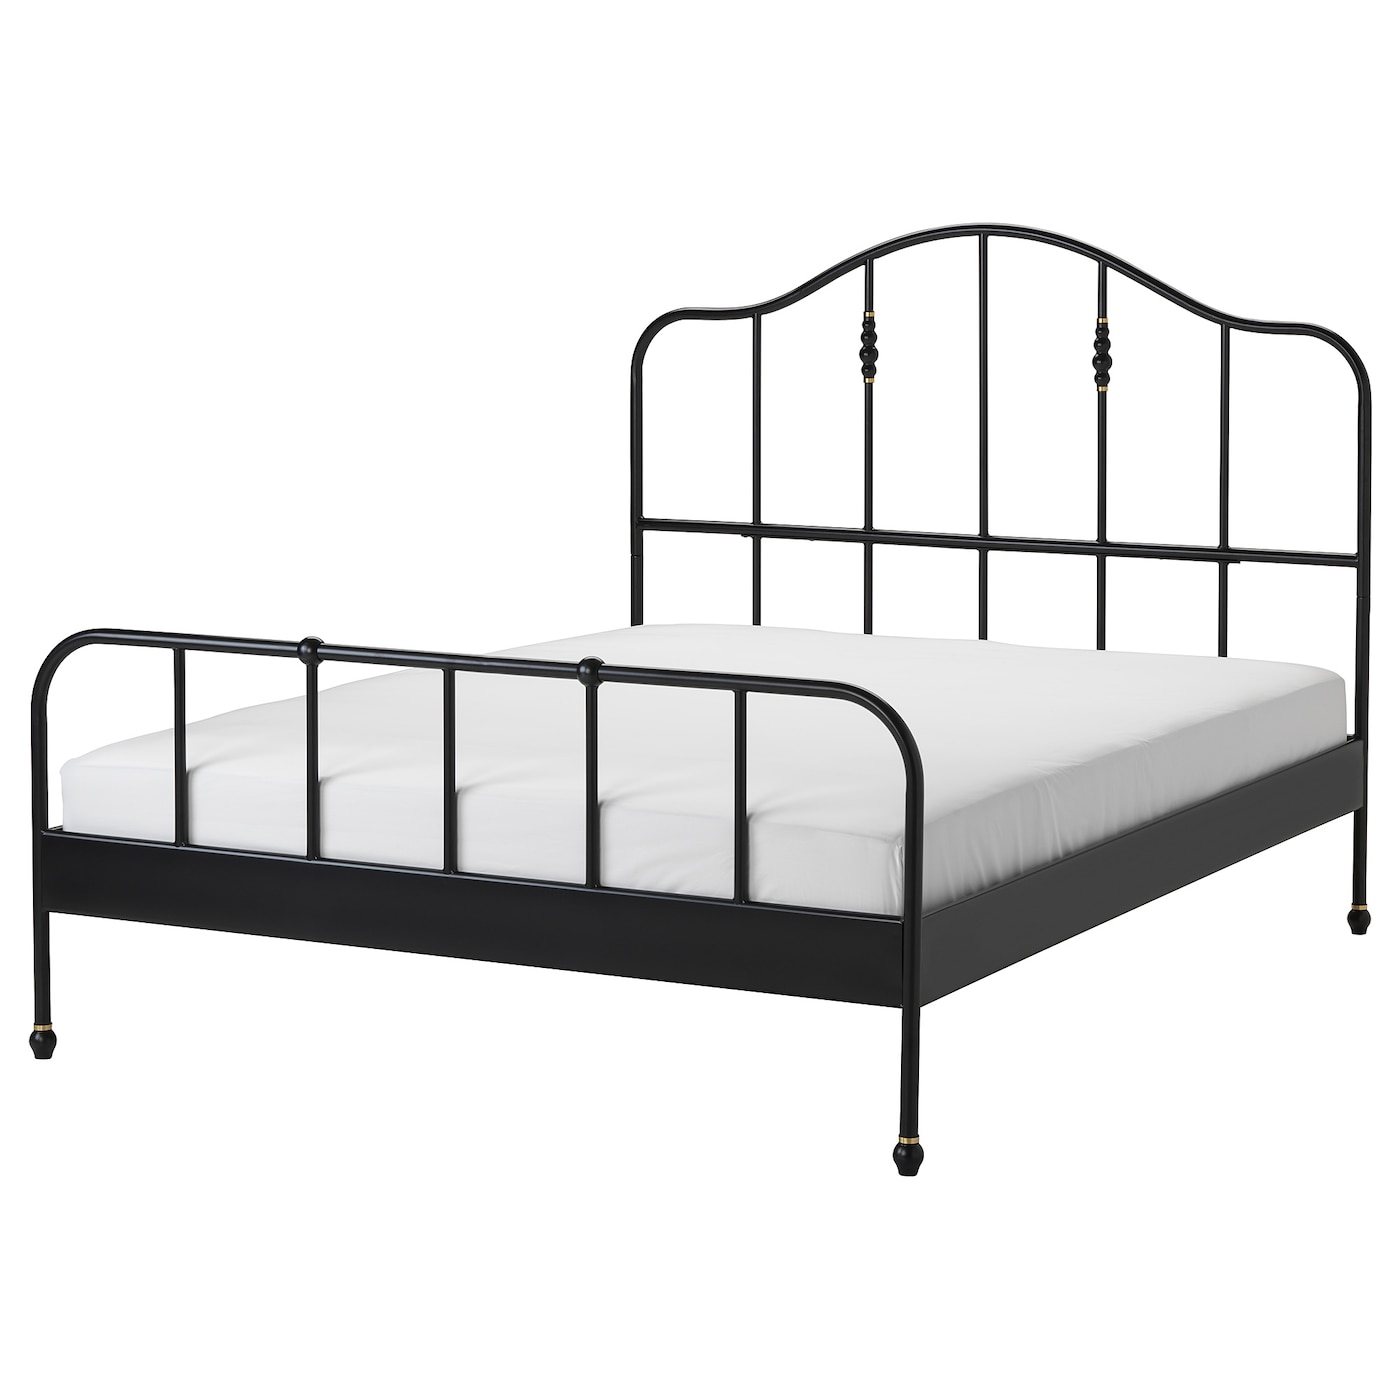 Двуспальная кровать - IKEA SAGSTUA/LÖNSET/LONSET, 200х160 см, черный, САГСТУА/ЛОНСЕТ ИКЕА